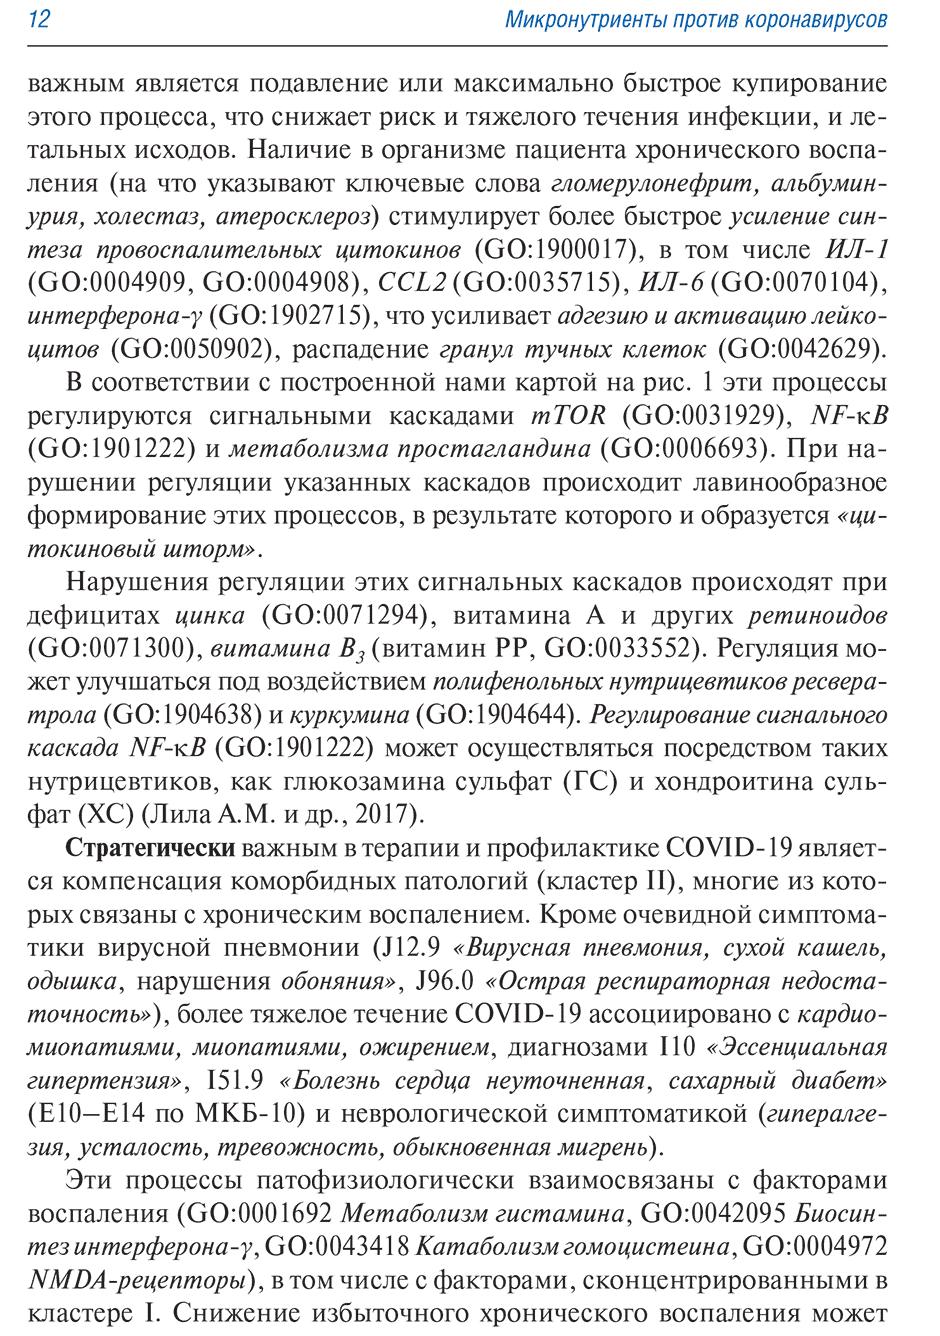 Пример страницы из книги "Микронутриенты против коронавирусов" - Торшин И. Ю., Громова О. А.